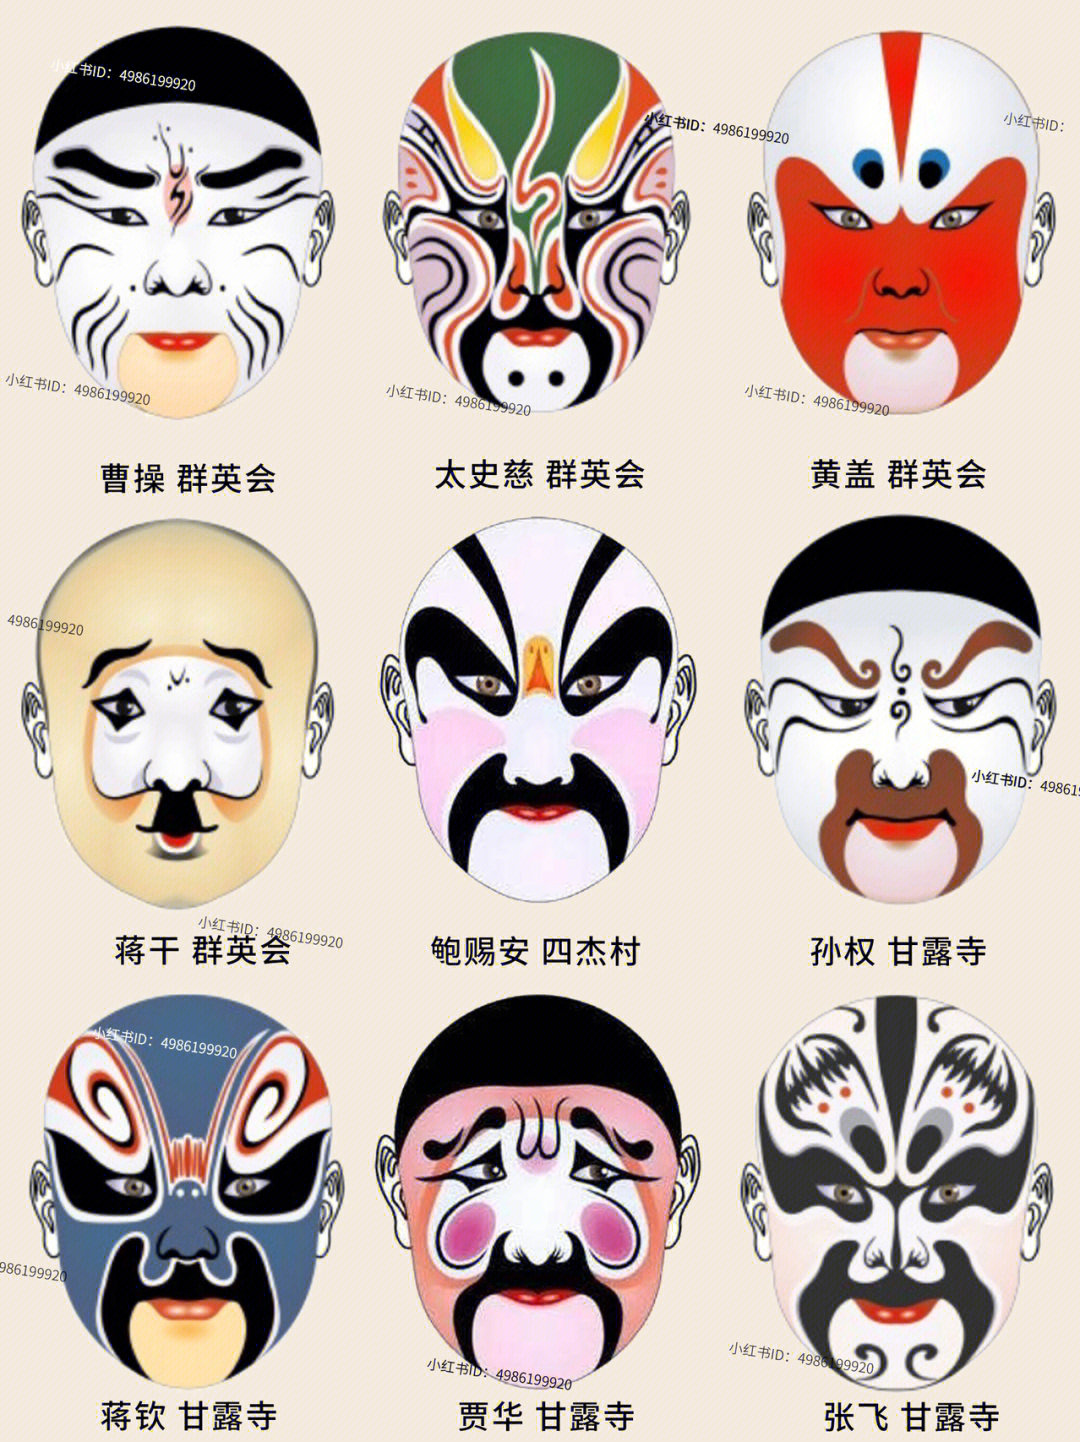 中国传统文化京剧脸谱画法大全完整版2